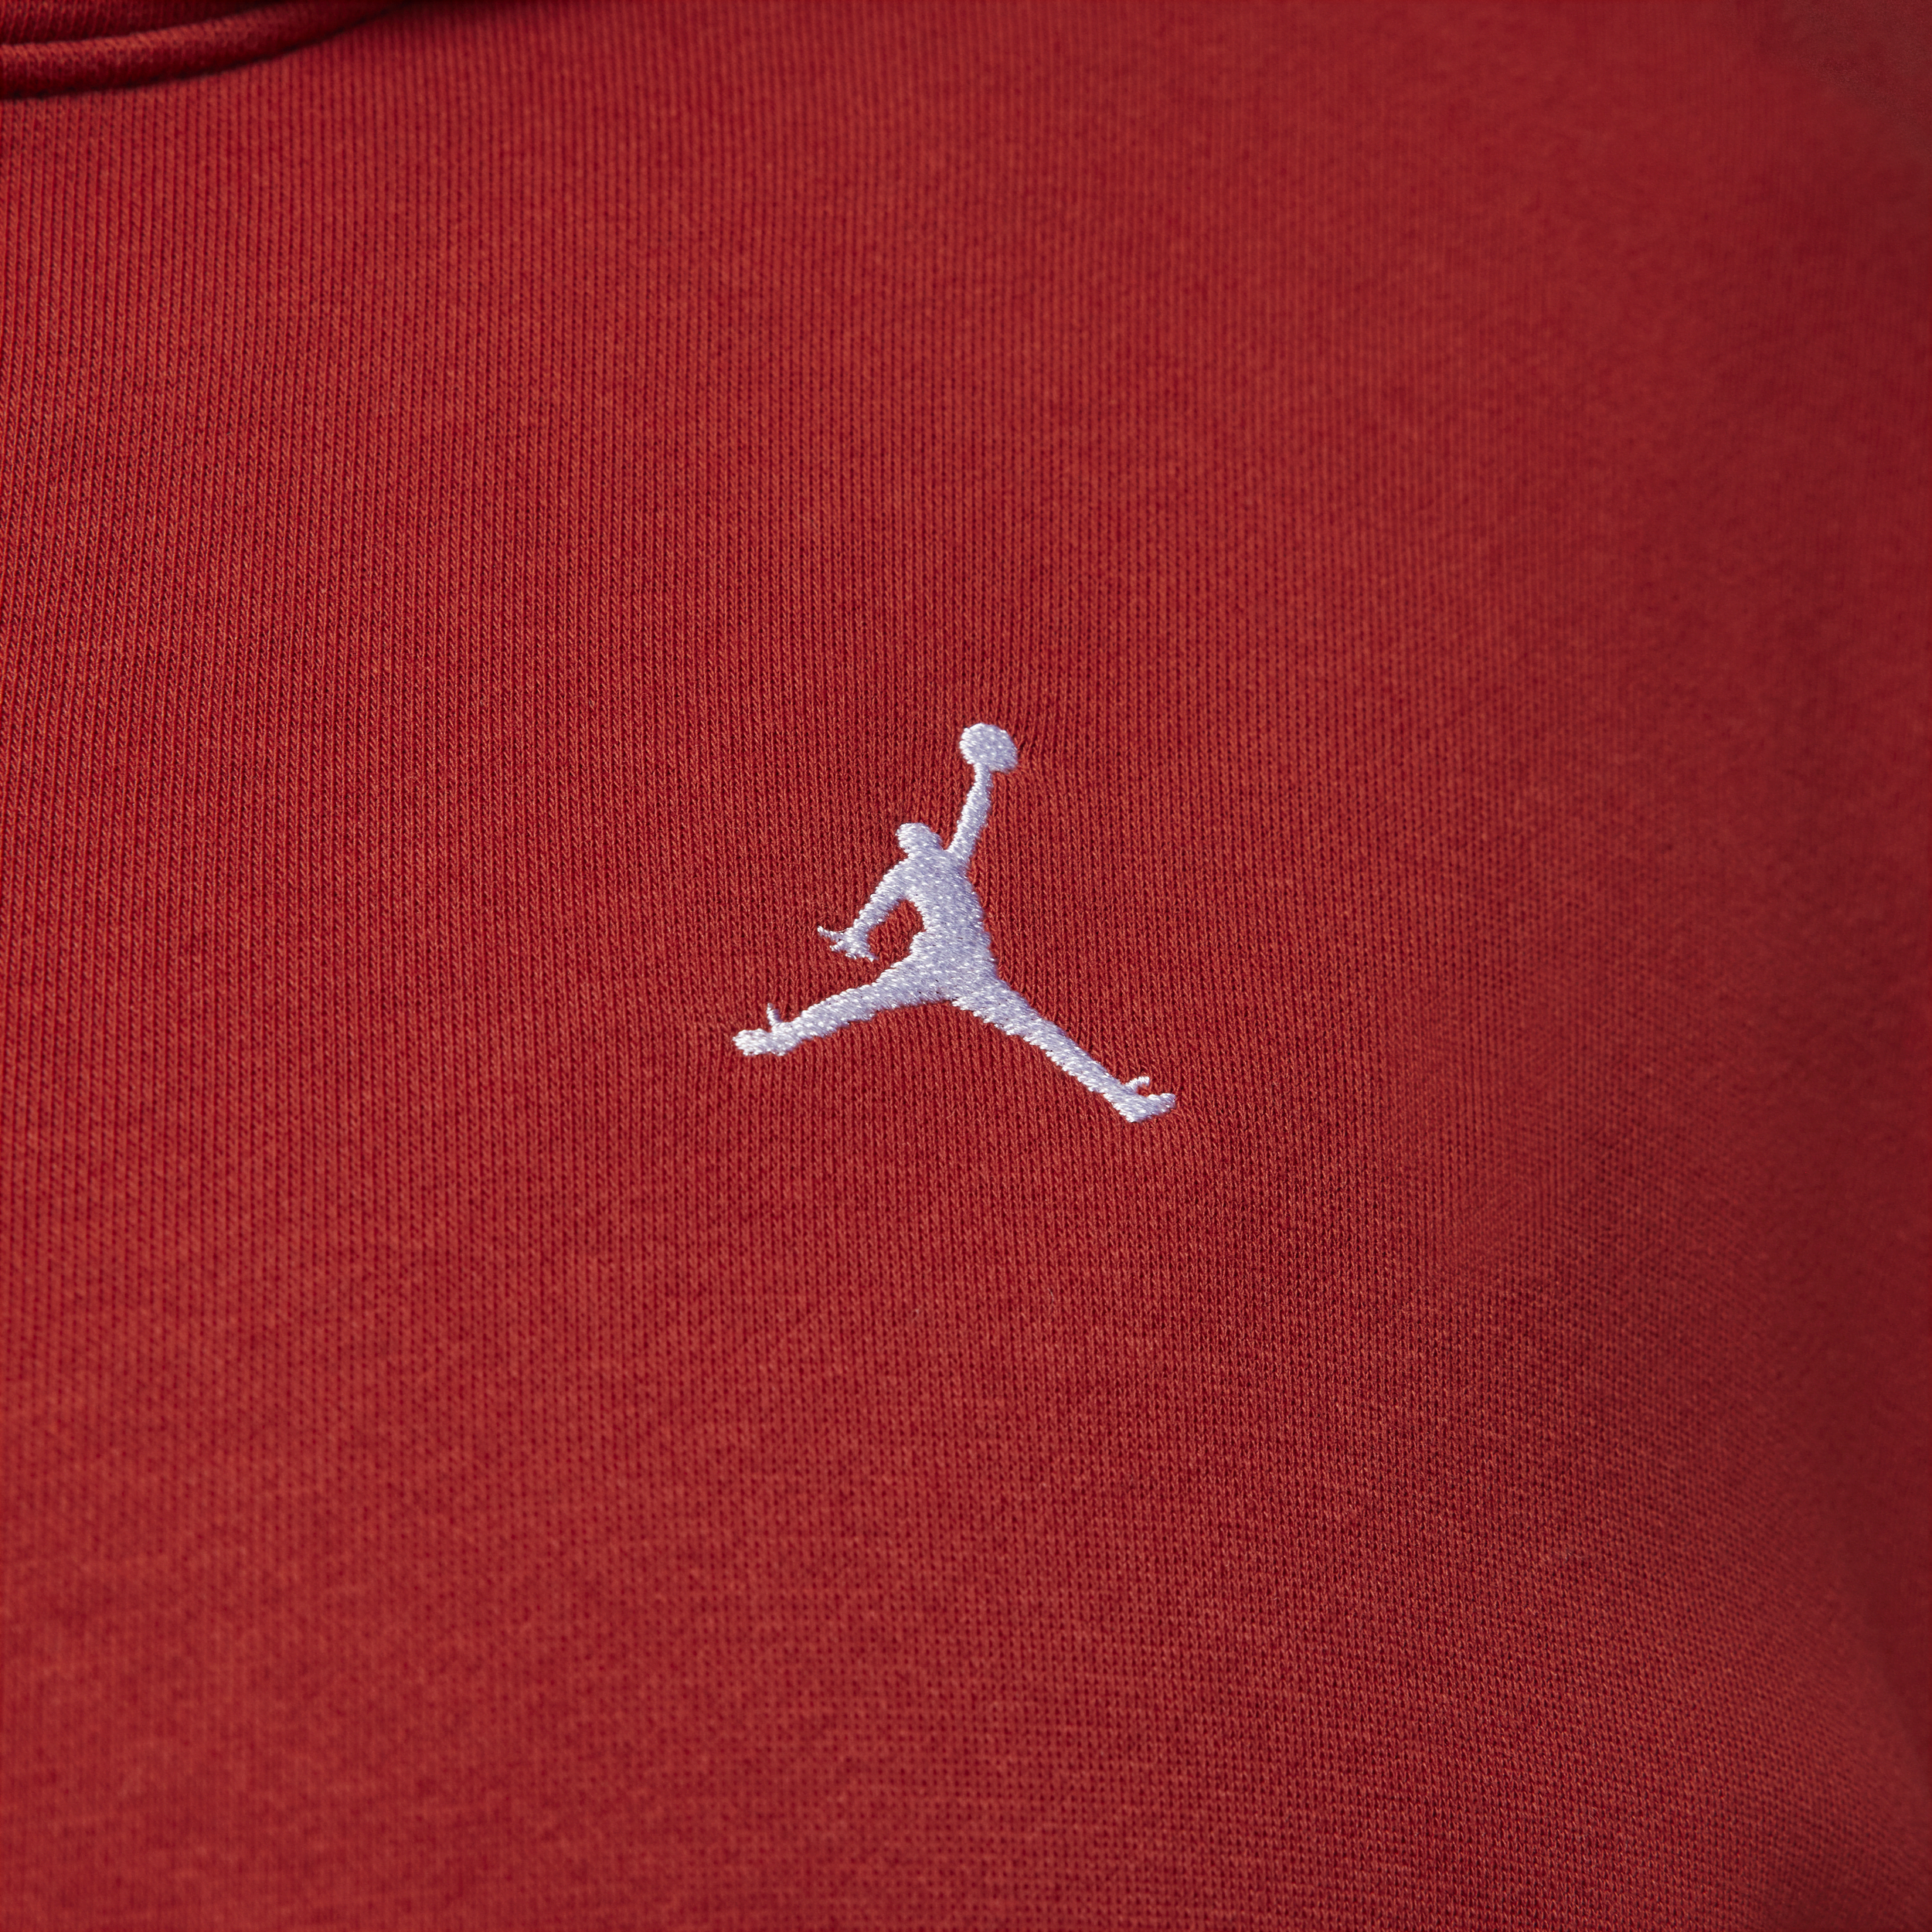 Jordan Brooklyn Fleece hoodie voor dames (Plus Size) Rood